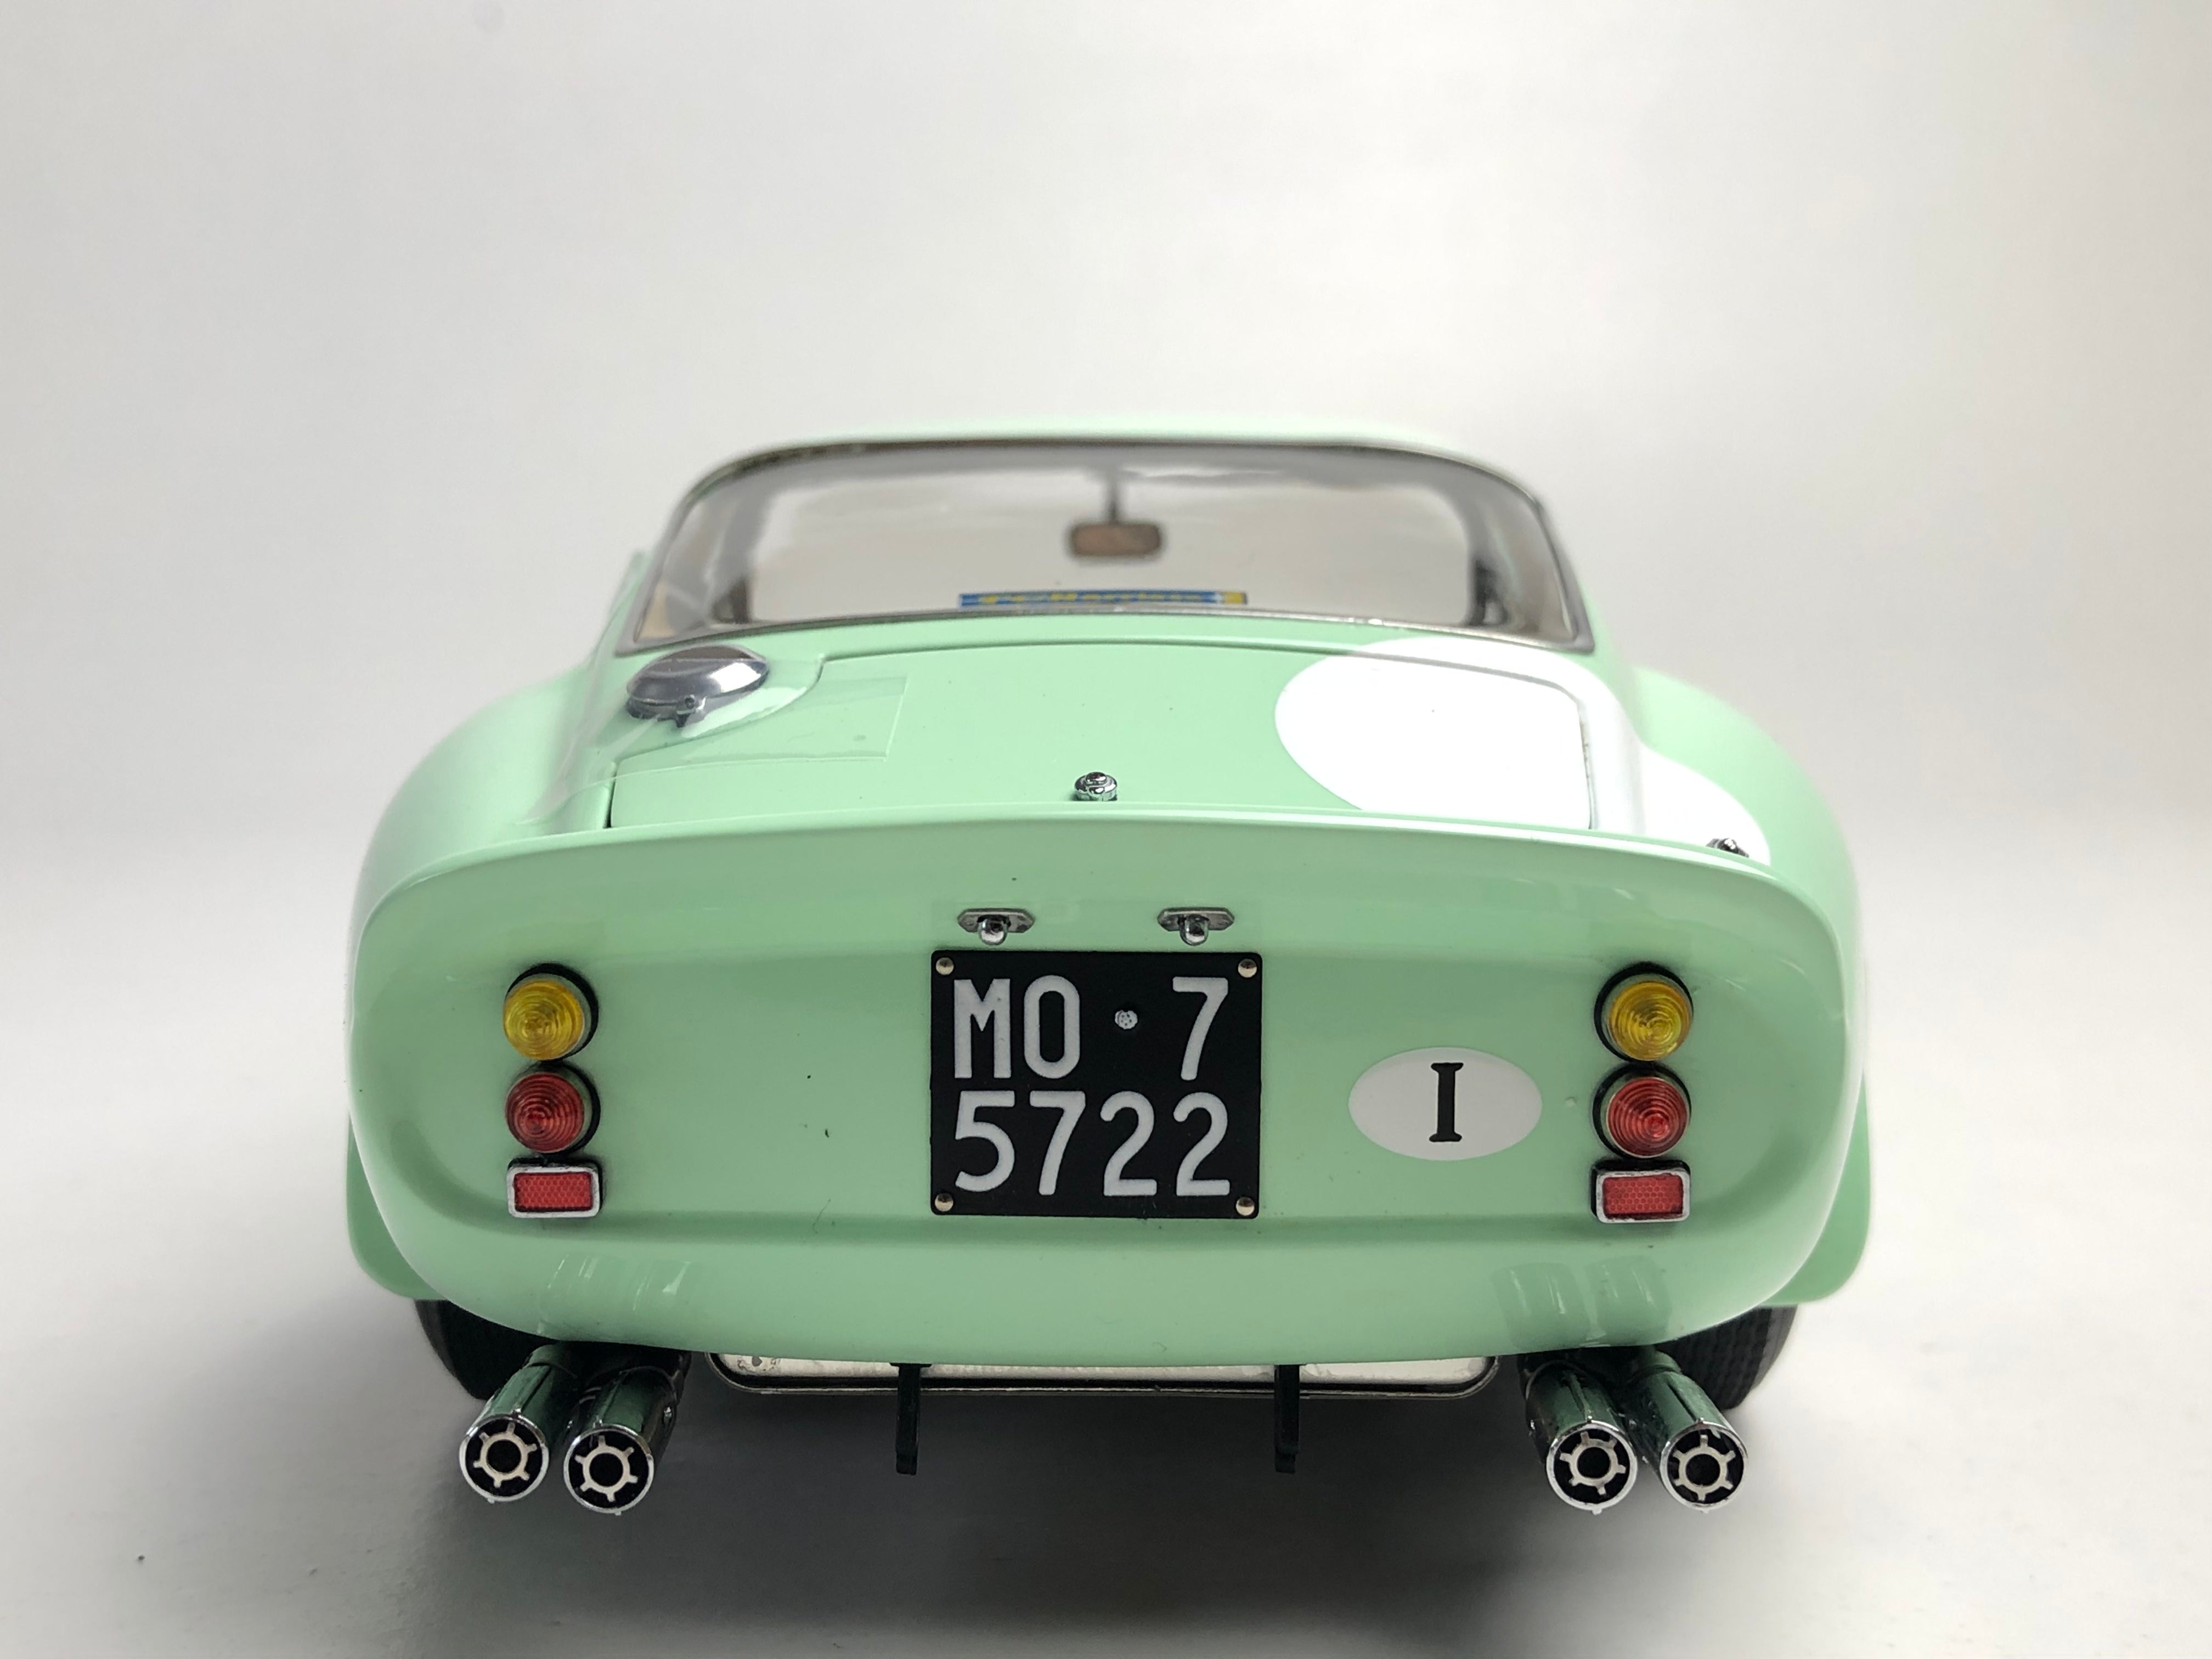 CMC 1:18 scale 1962 Ferrari 250 GTO M247 #15 chassis #3505